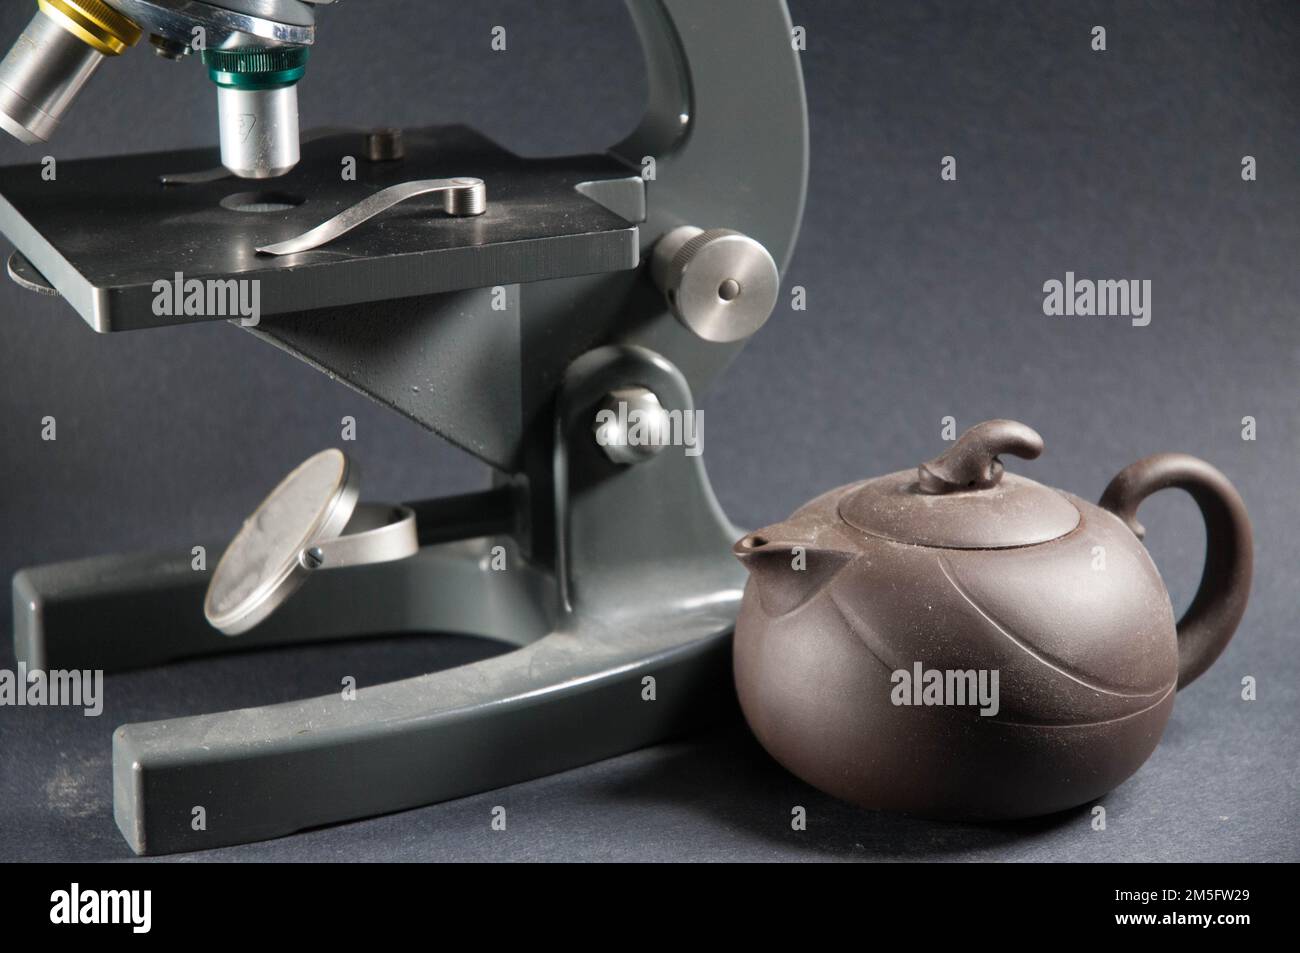 Eine Yixing-Teekanne sitzt neben einem alten Mikroskop vor grauem Hintergrund. Trennung, keine Verbindung. Stockfoto